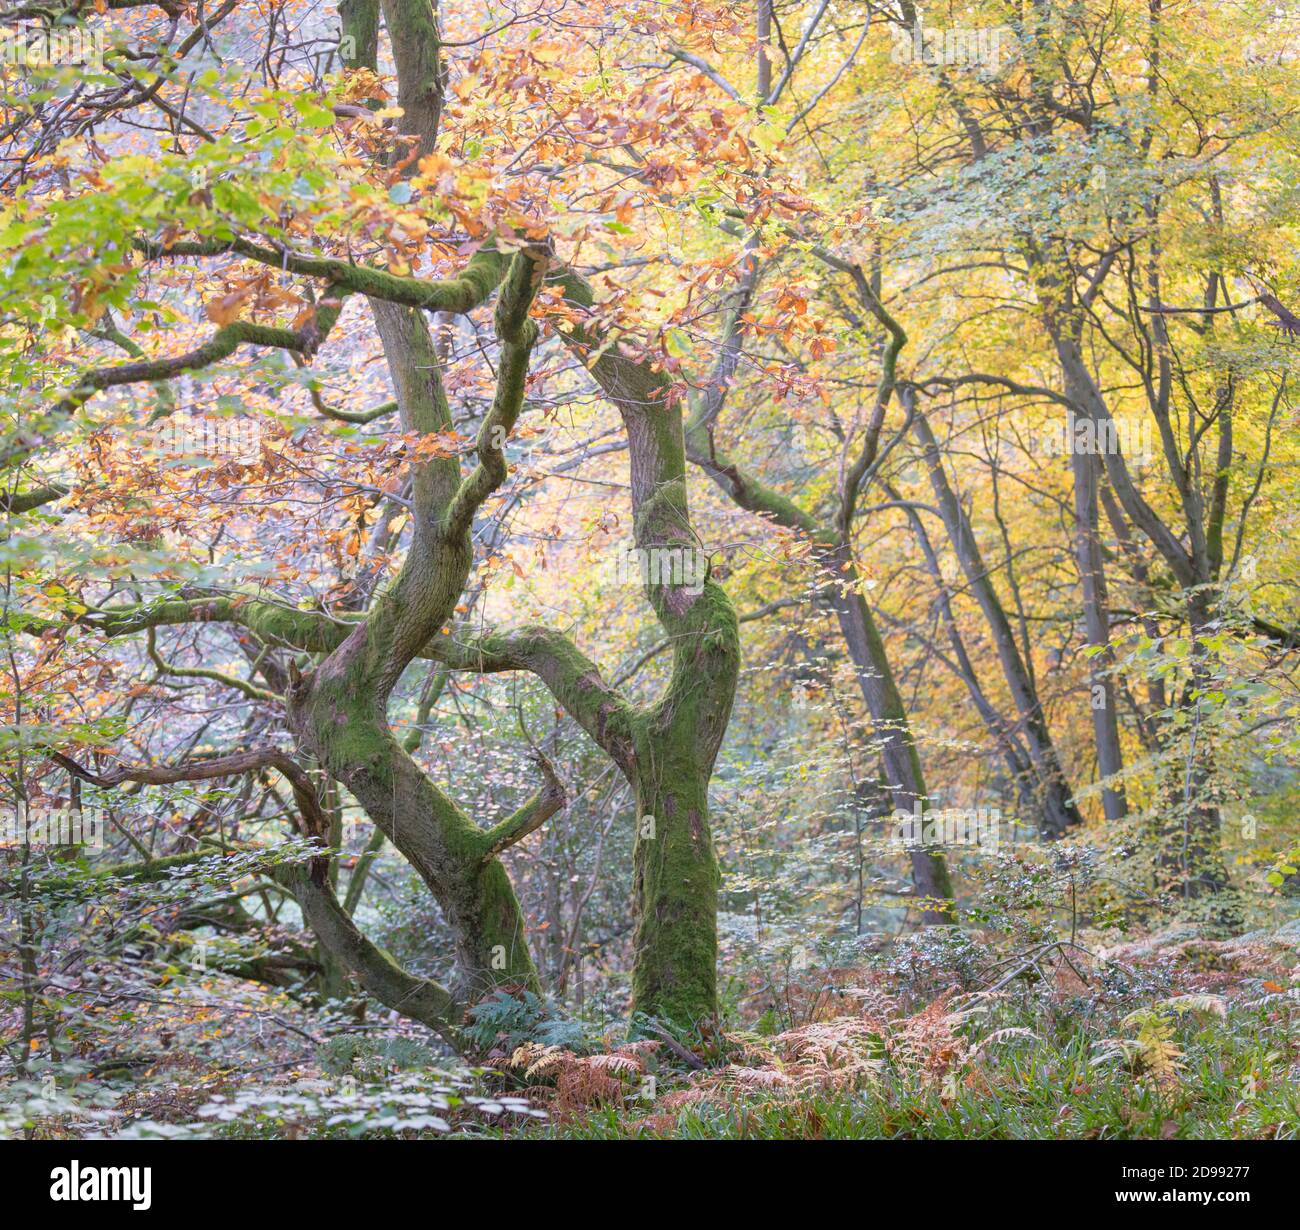 Retorcidos robles antiguos en un bosque en otoño, con hojas doradas y musgo verde brillante en los troncos y ramas de los árboles. Foto de stock